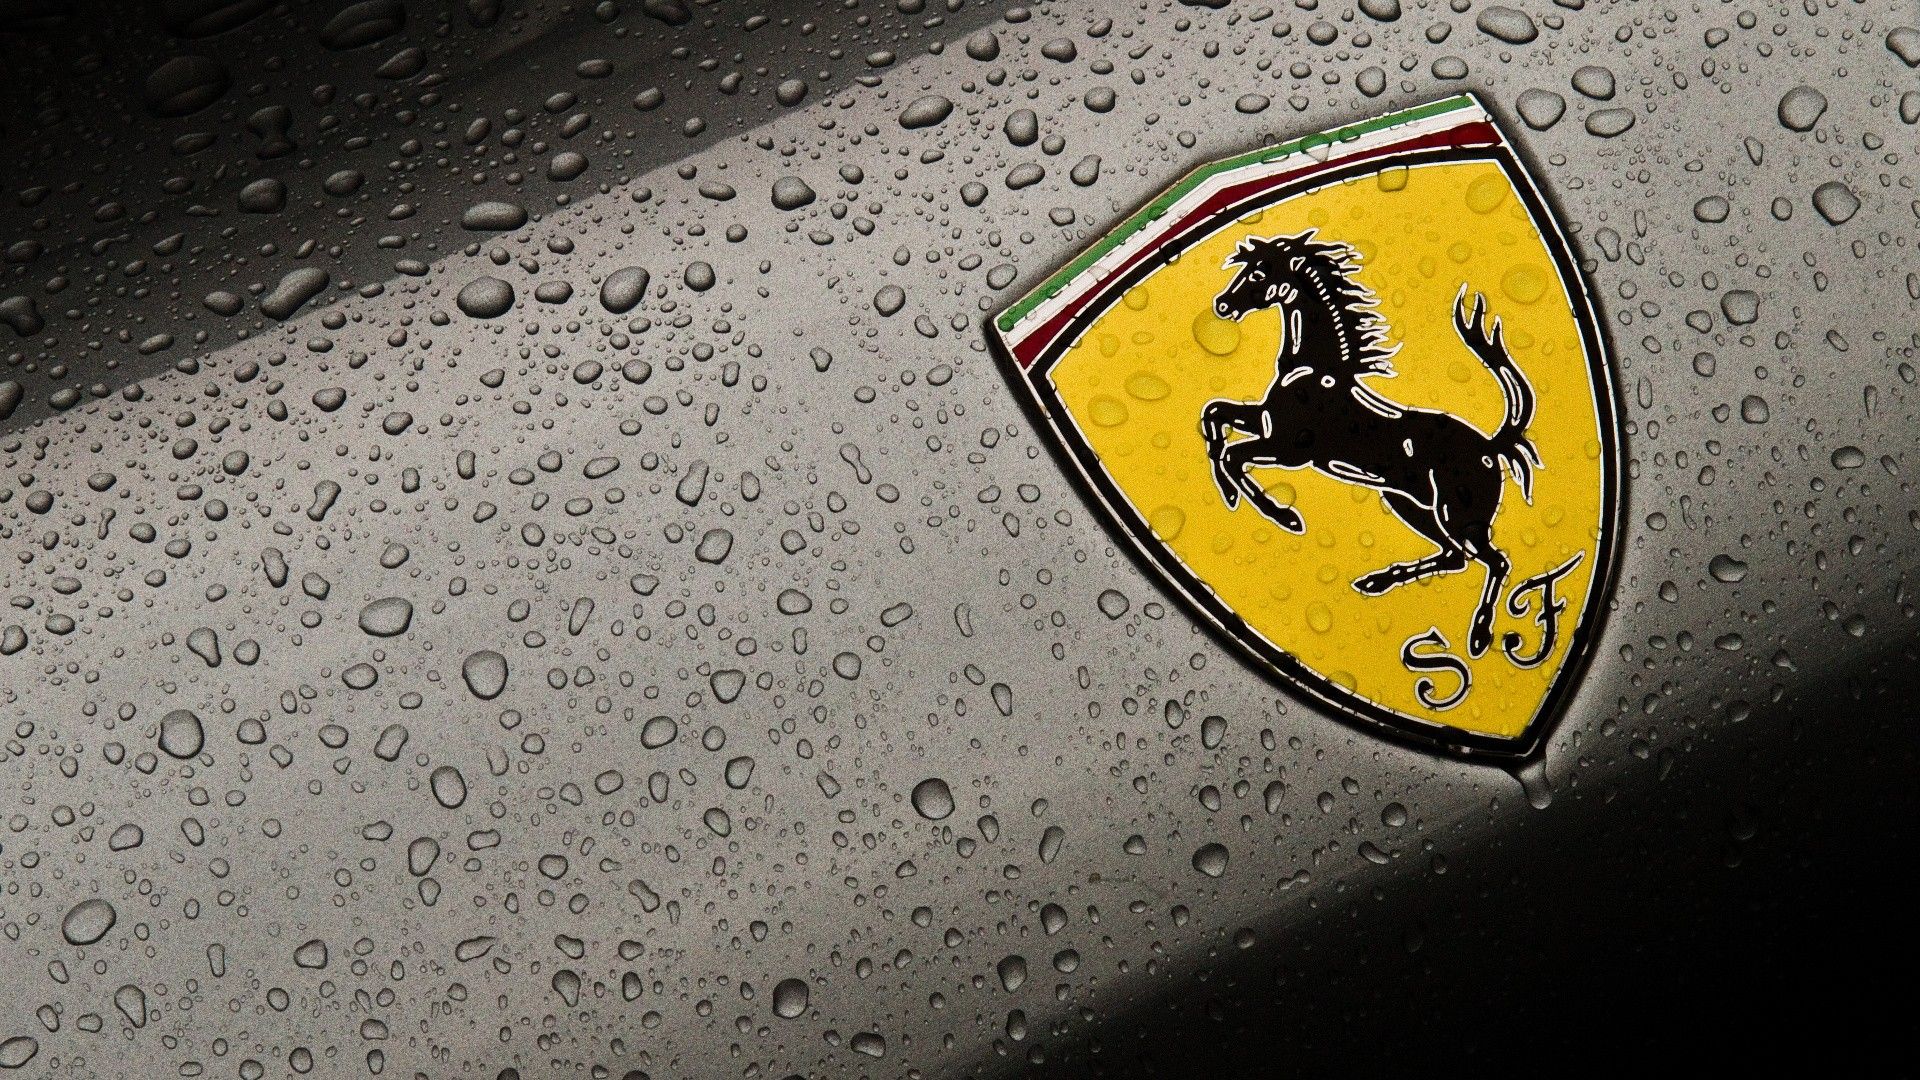 Ferrari Logo Wallpaper For Mobile - image